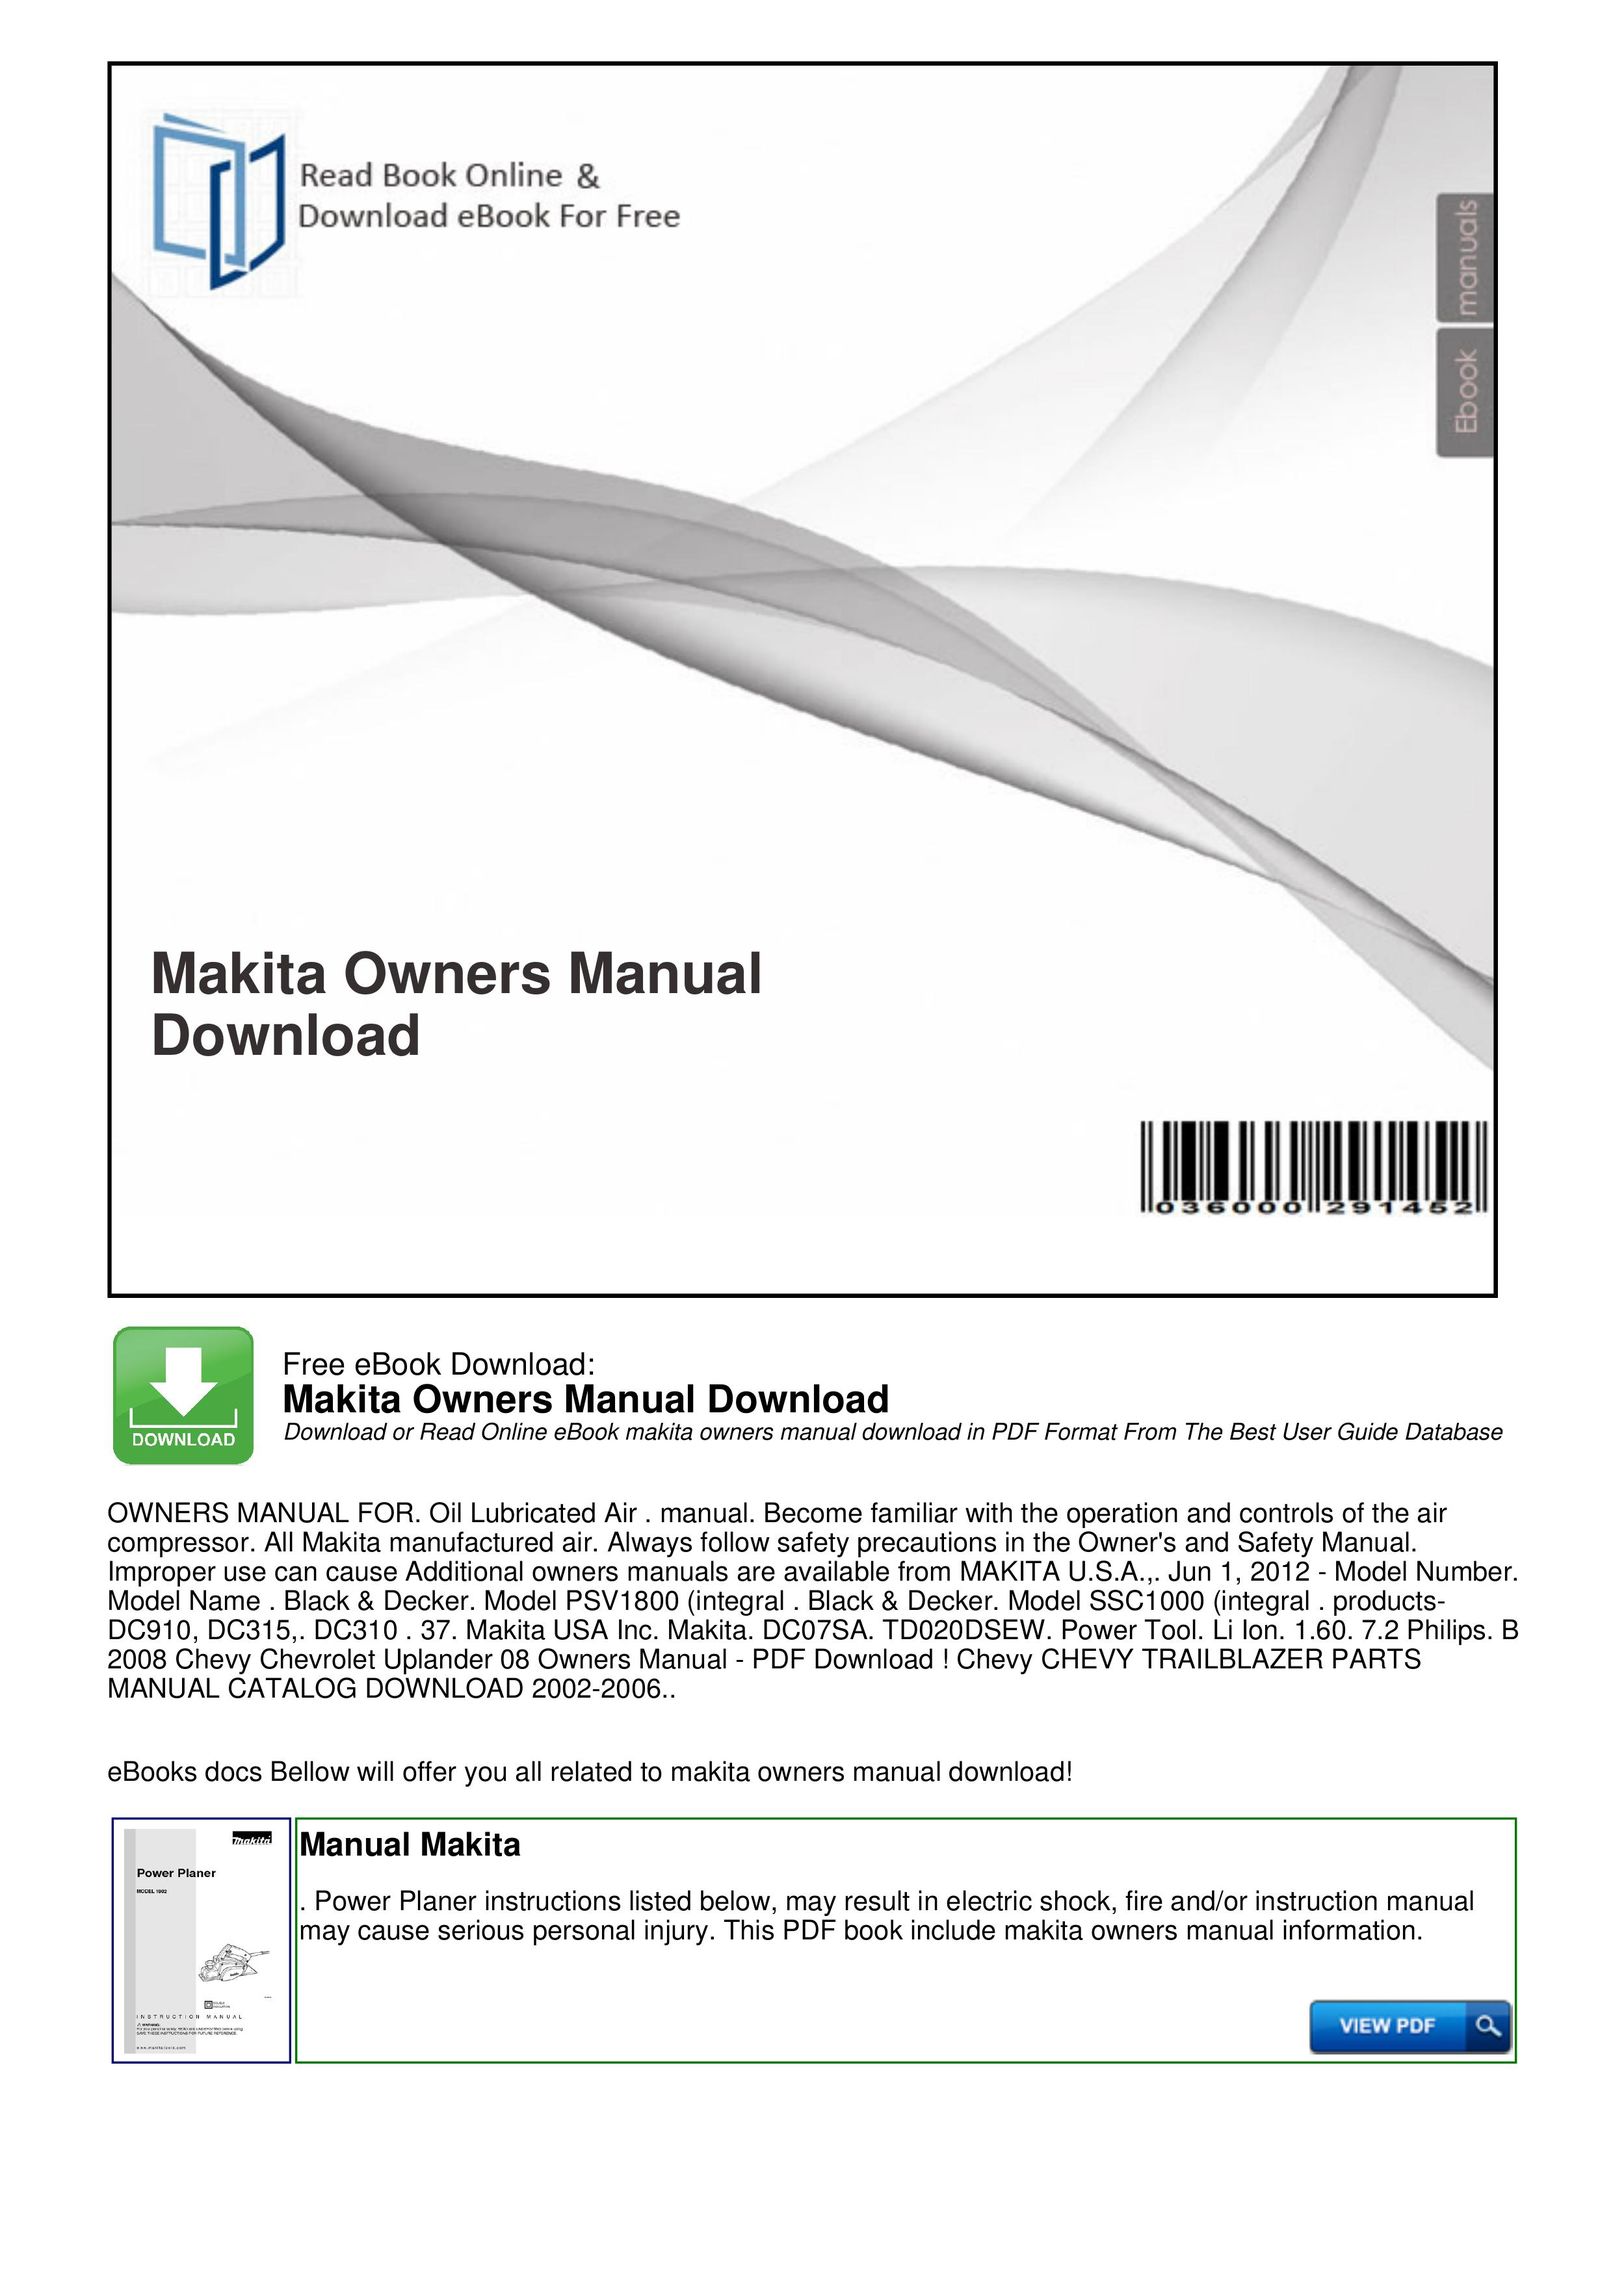 Makita DC310 eBook Reader User Manual